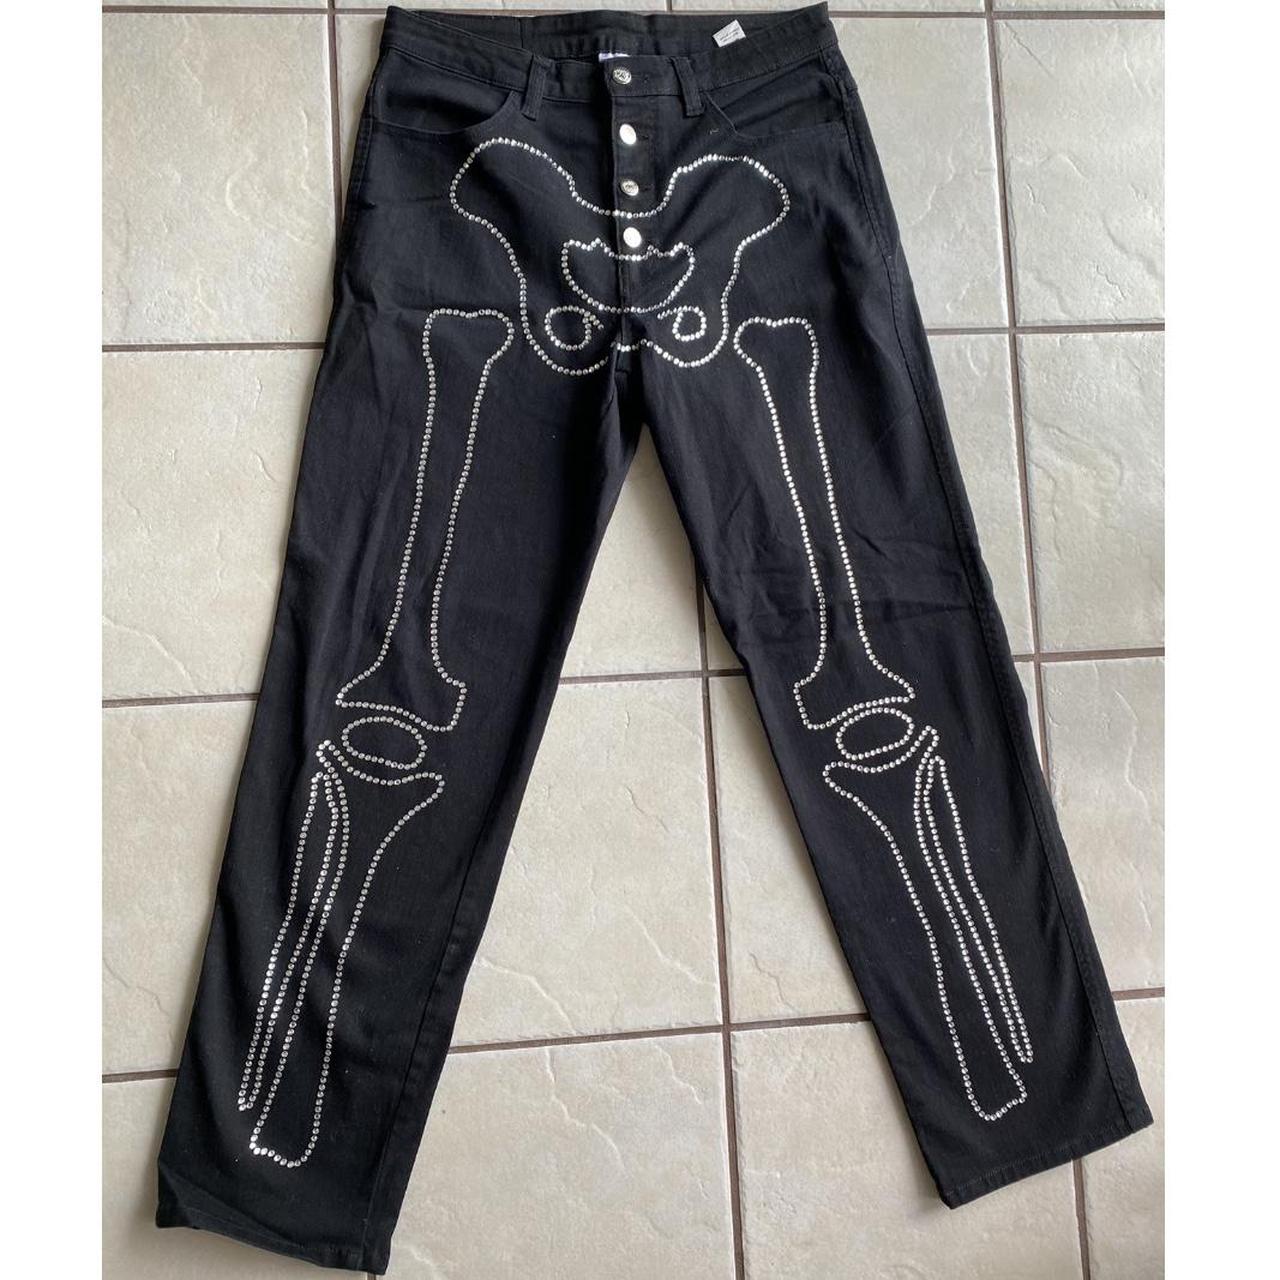 Salem7 Skeleton Black Denim Jeans